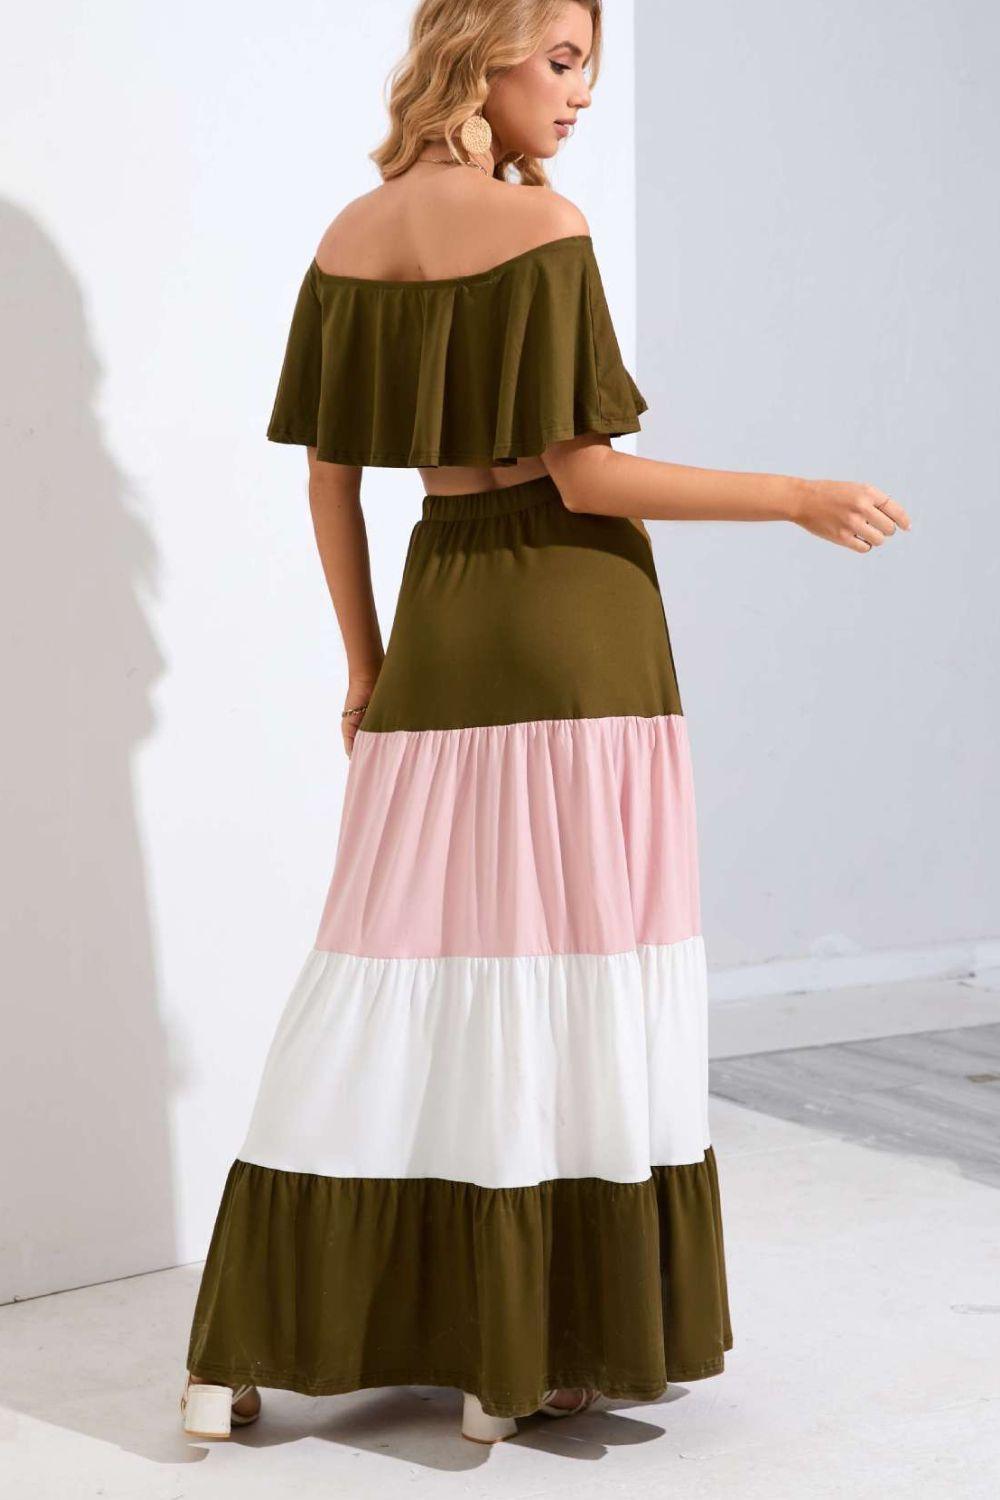 Go With The Flow Tiered Crop Top Skirt Set - MXSTUDIO.COM